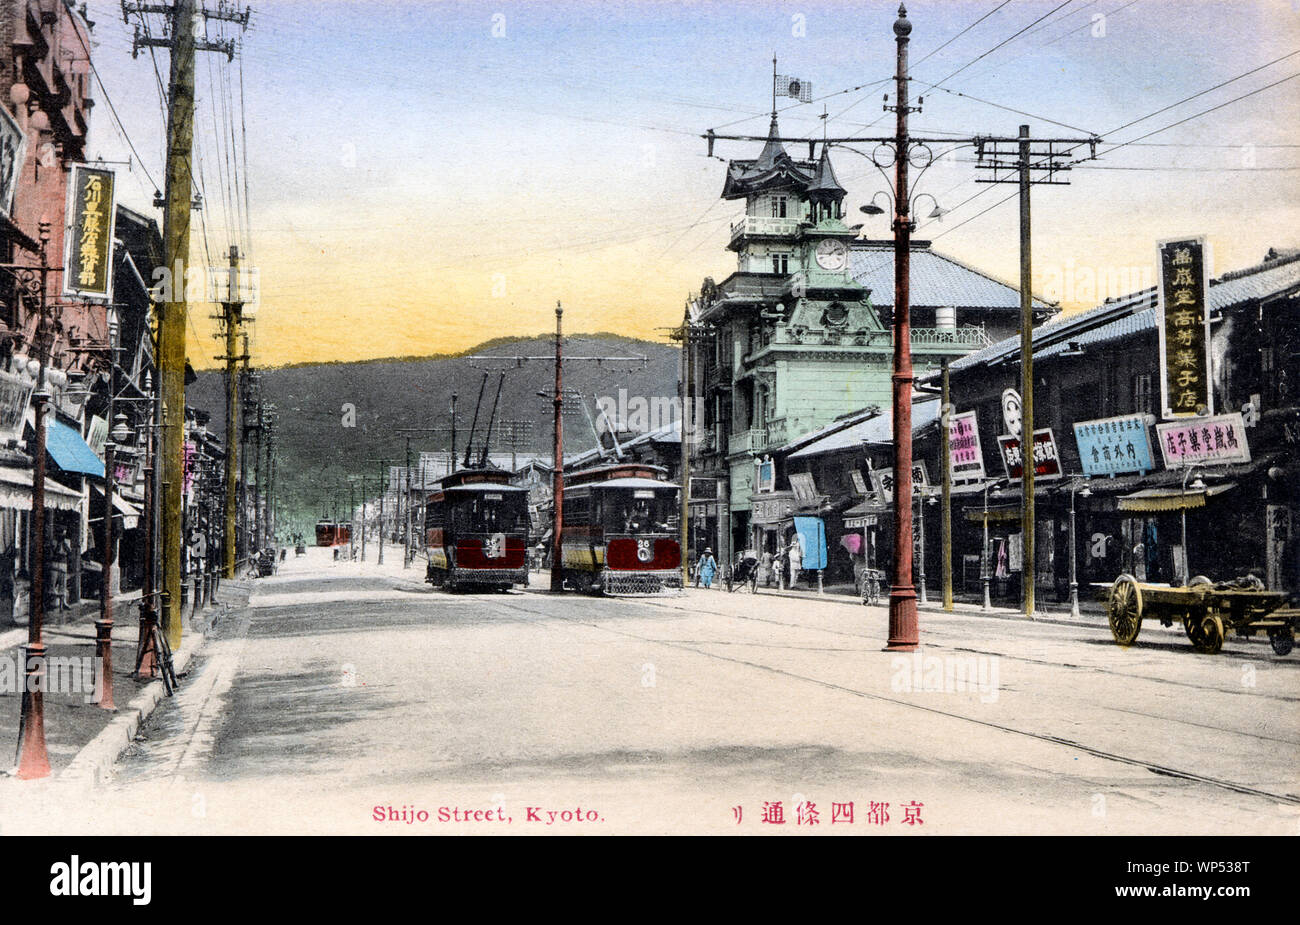 [1900s Japan - Straßenbahnen in Kyoto] - Straßenbahnen auf Shijo-dori, Kyoto. 20. jahrhundert alte Ansichtskarte. Stockfoto